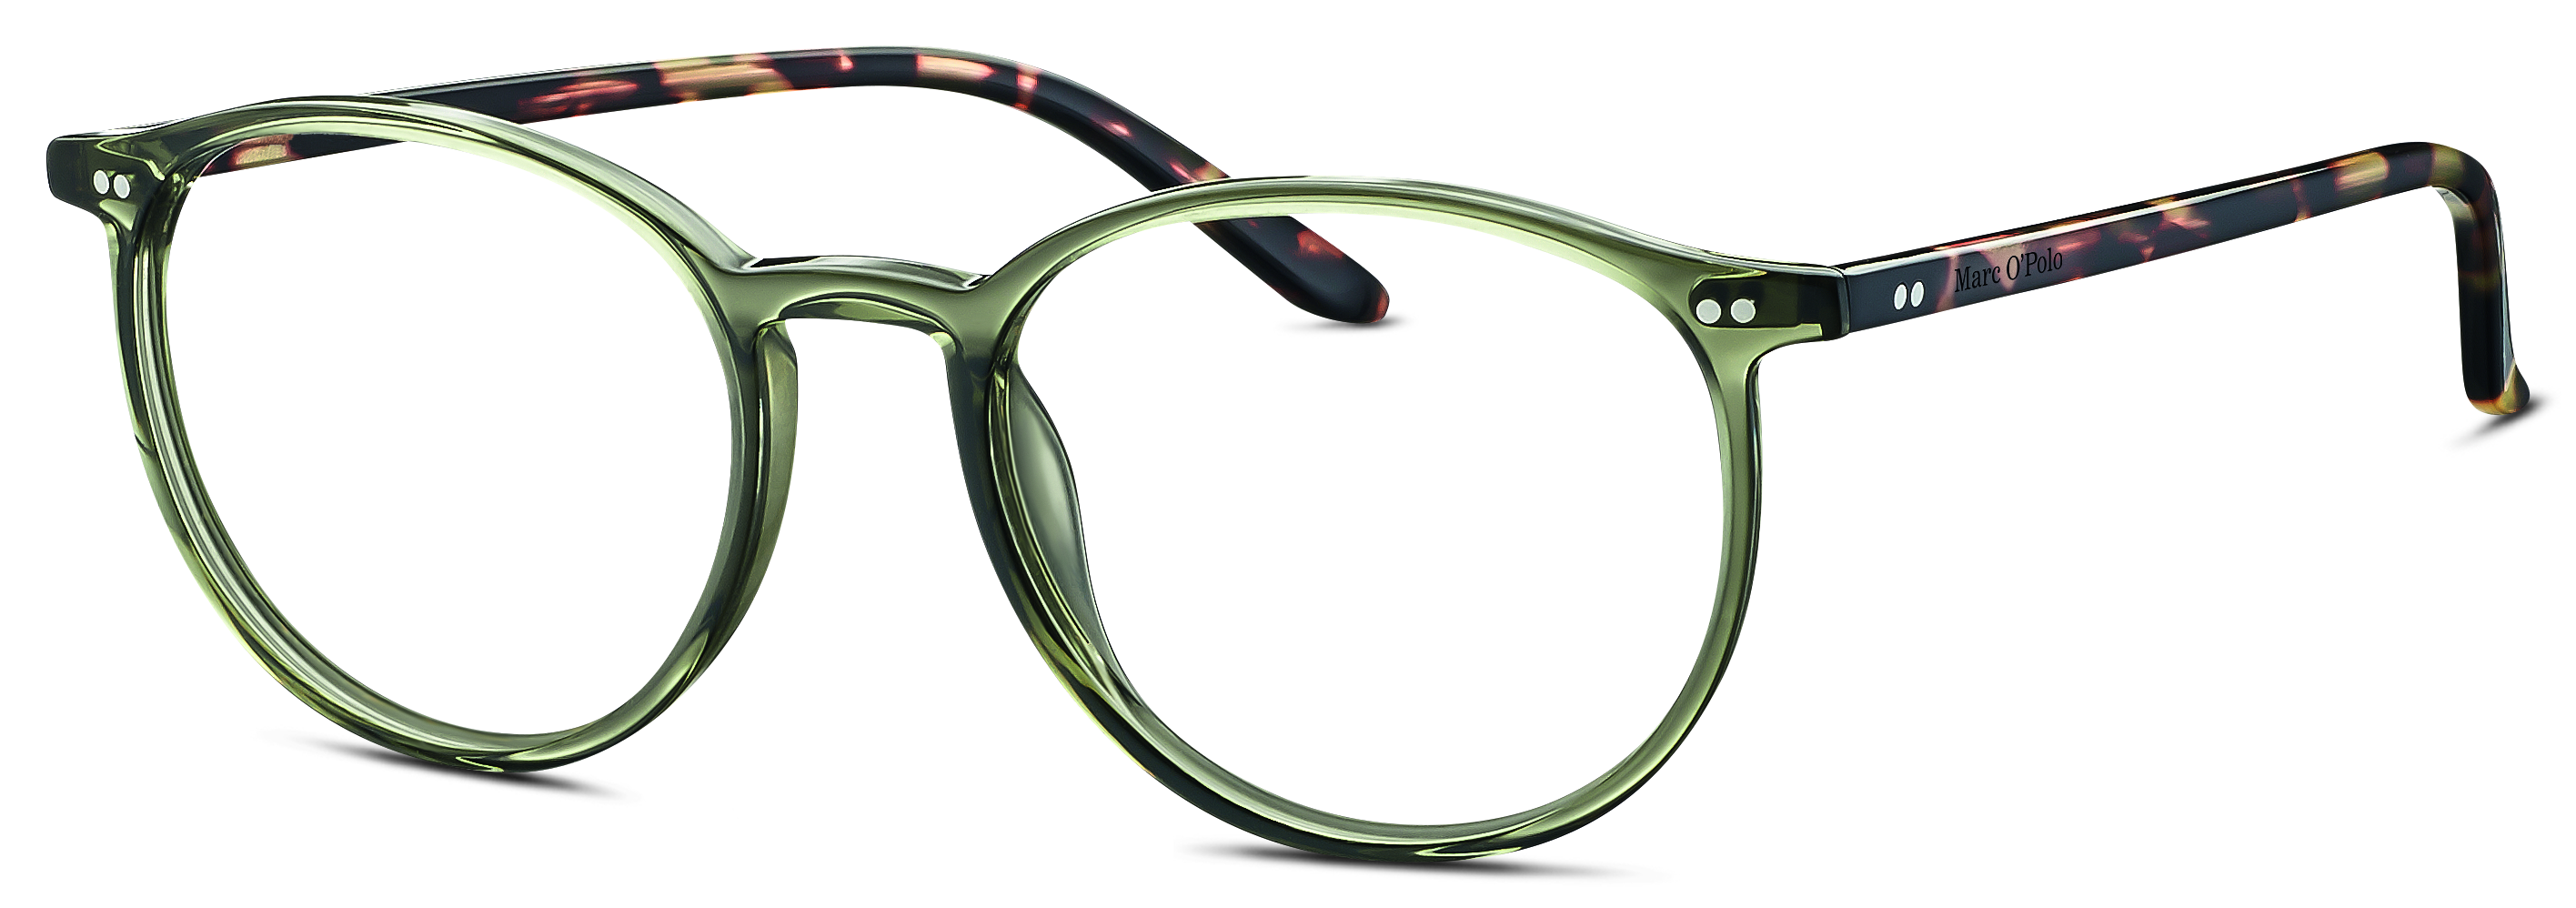 Das Bild zeigt die Korrektionsbrille 503084 46 von der Marke Marc o Polo in grün - transparent.